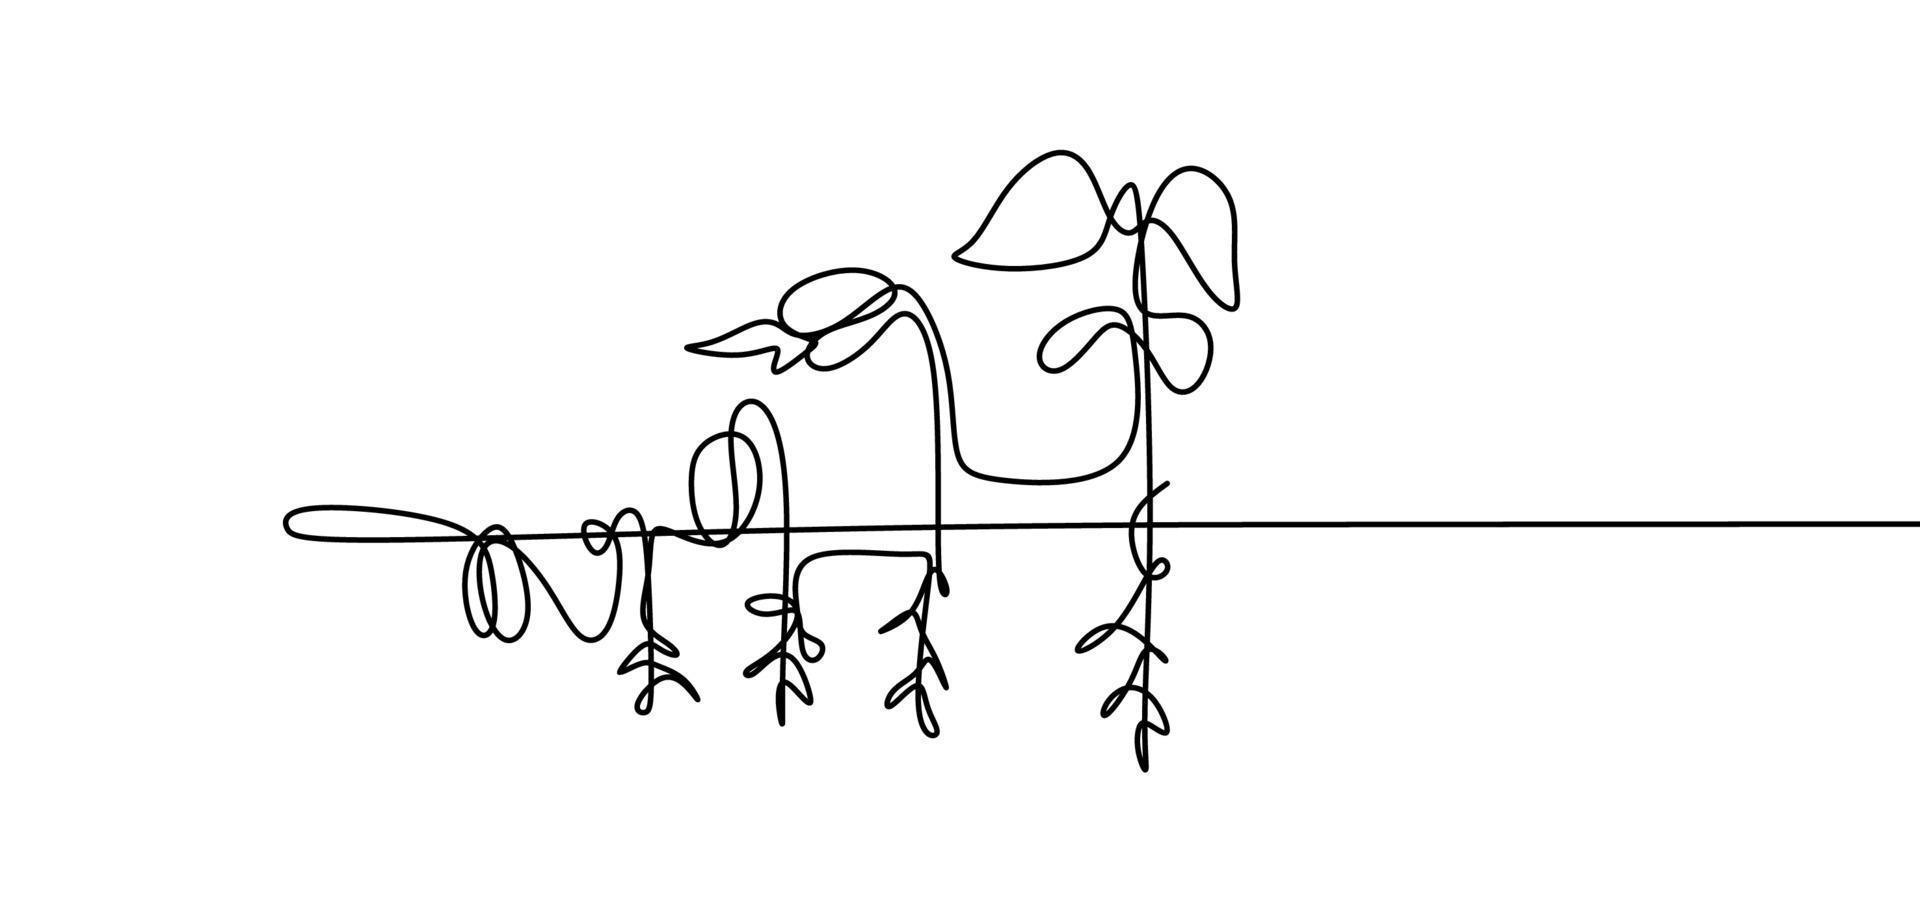 étapes de croissance de la plante dessin continu d'une ligne vecteur